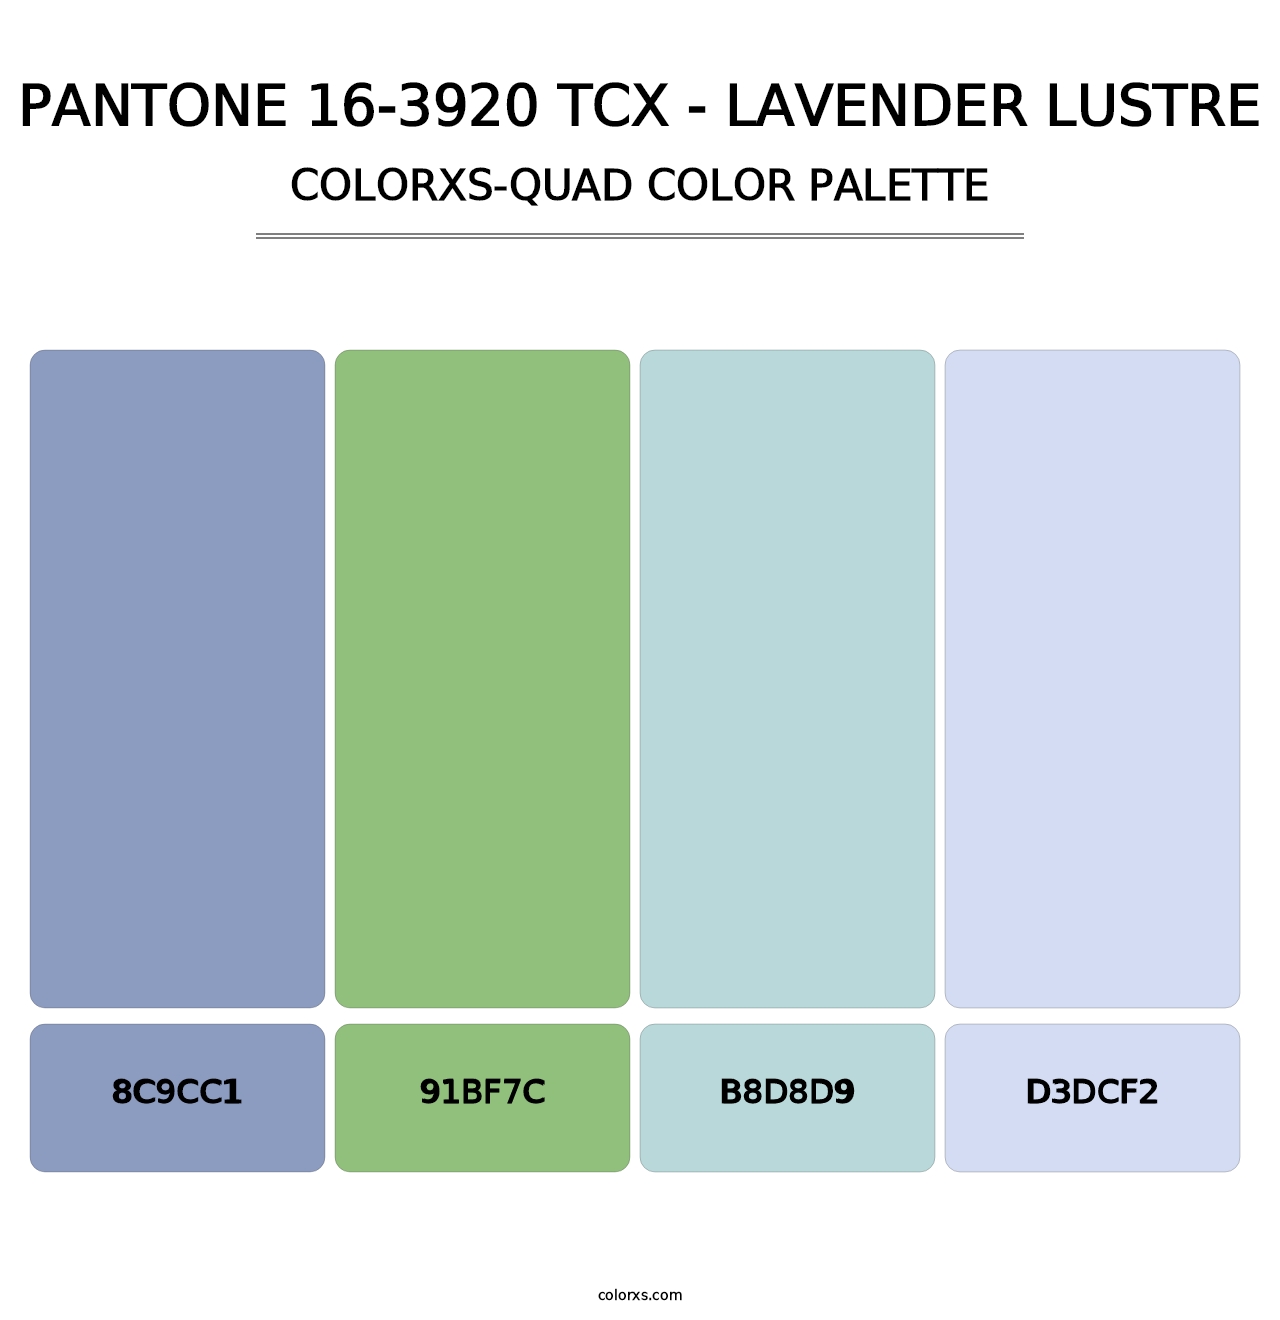 PANTONE 16-3920 TCX - Lavender Lustre - Colorxs Quad Palette